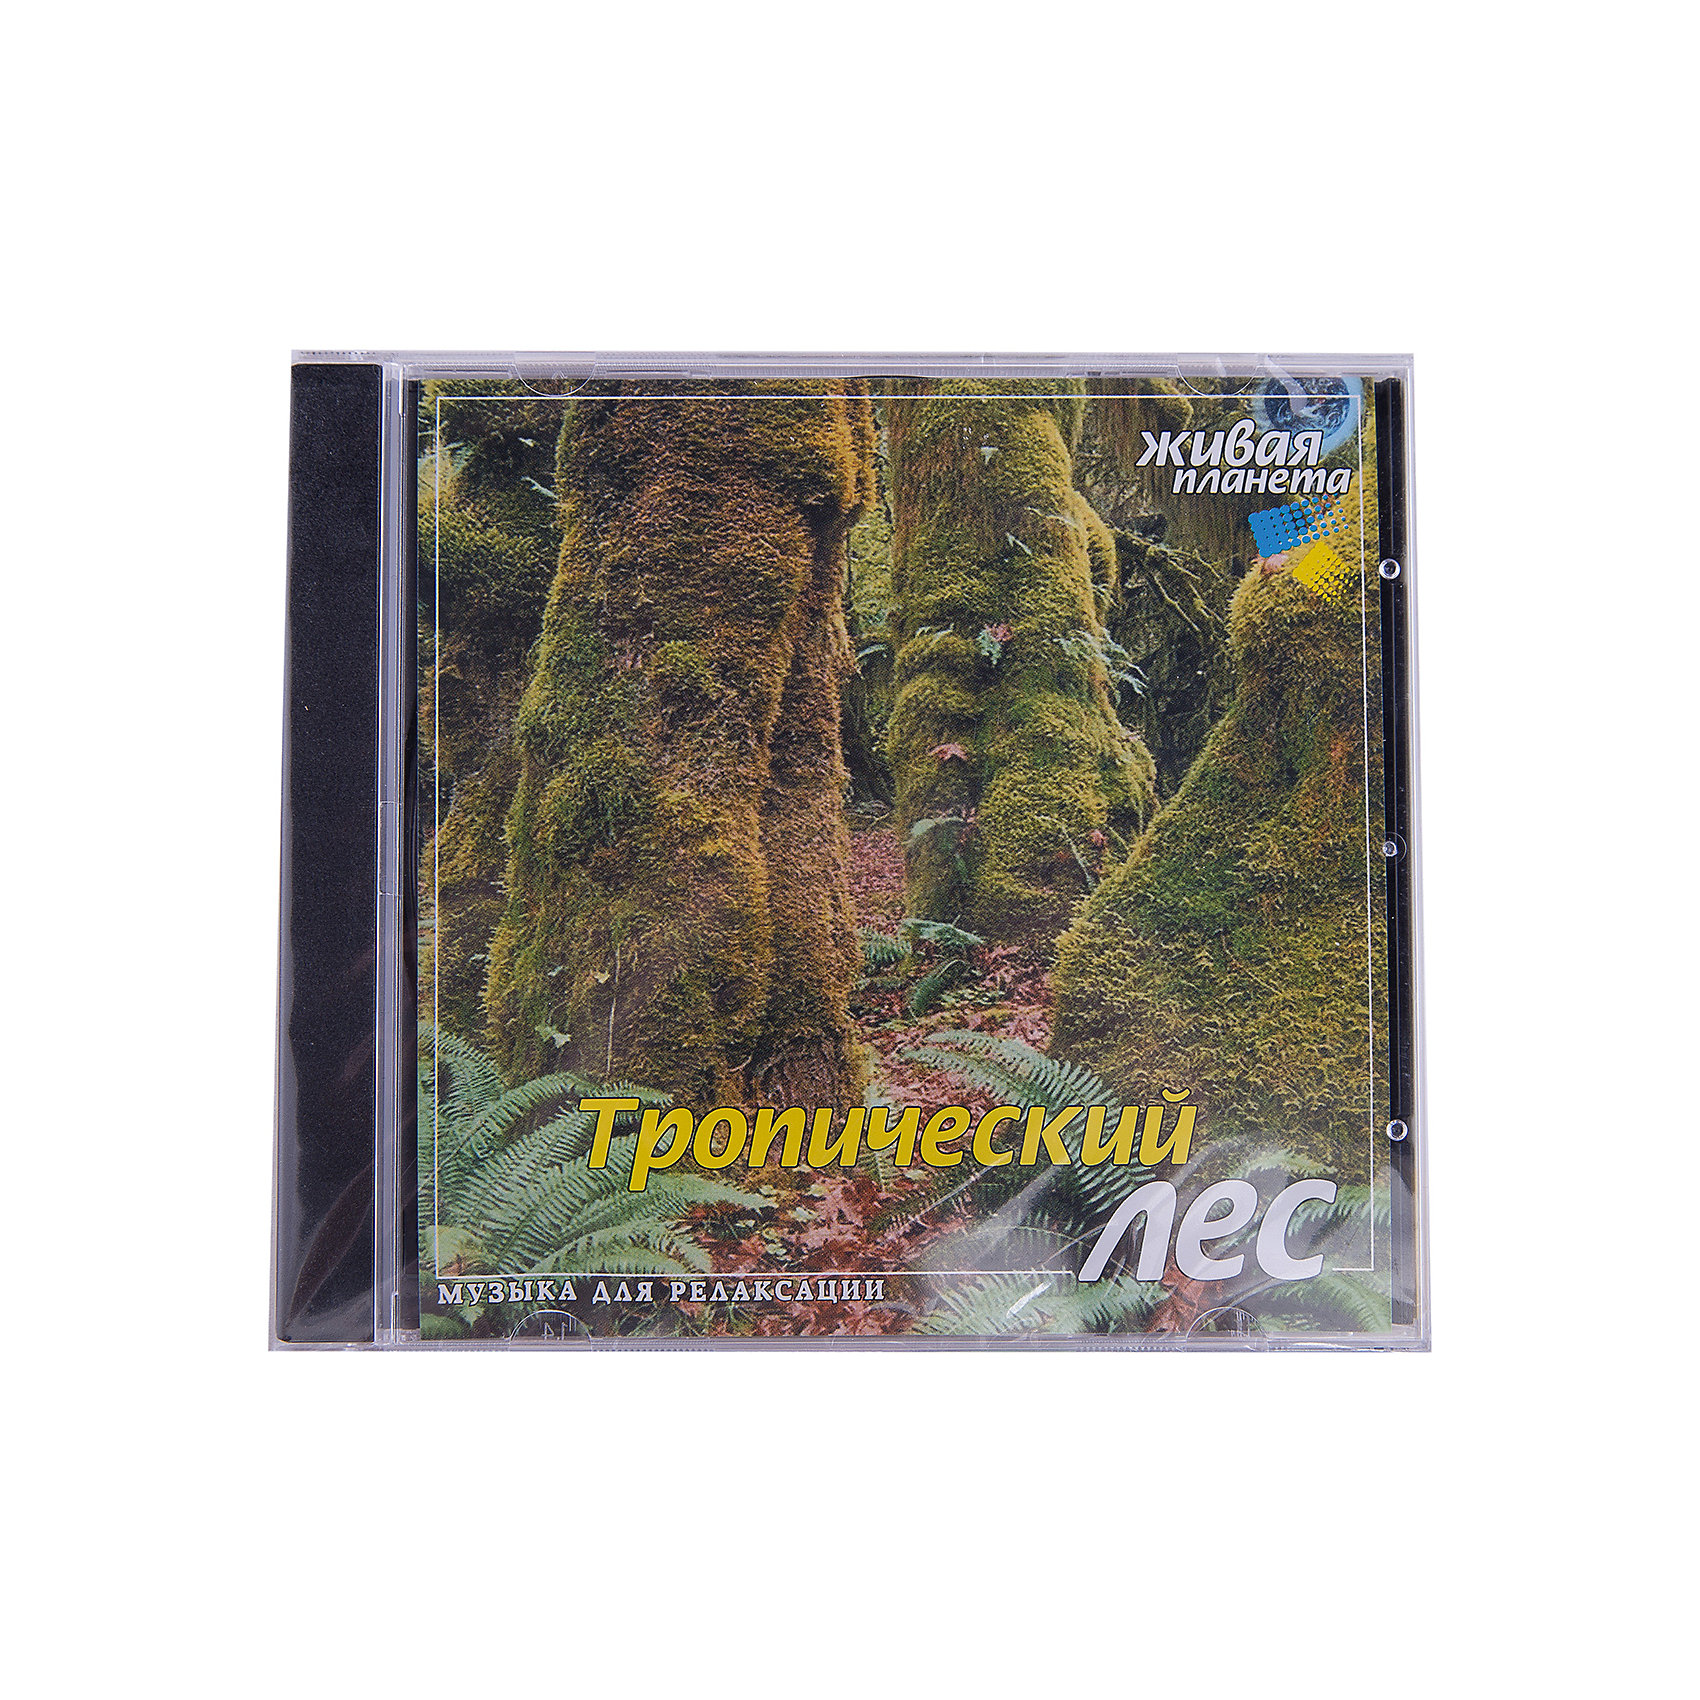 фото CD "Тропический лес" Би смарт